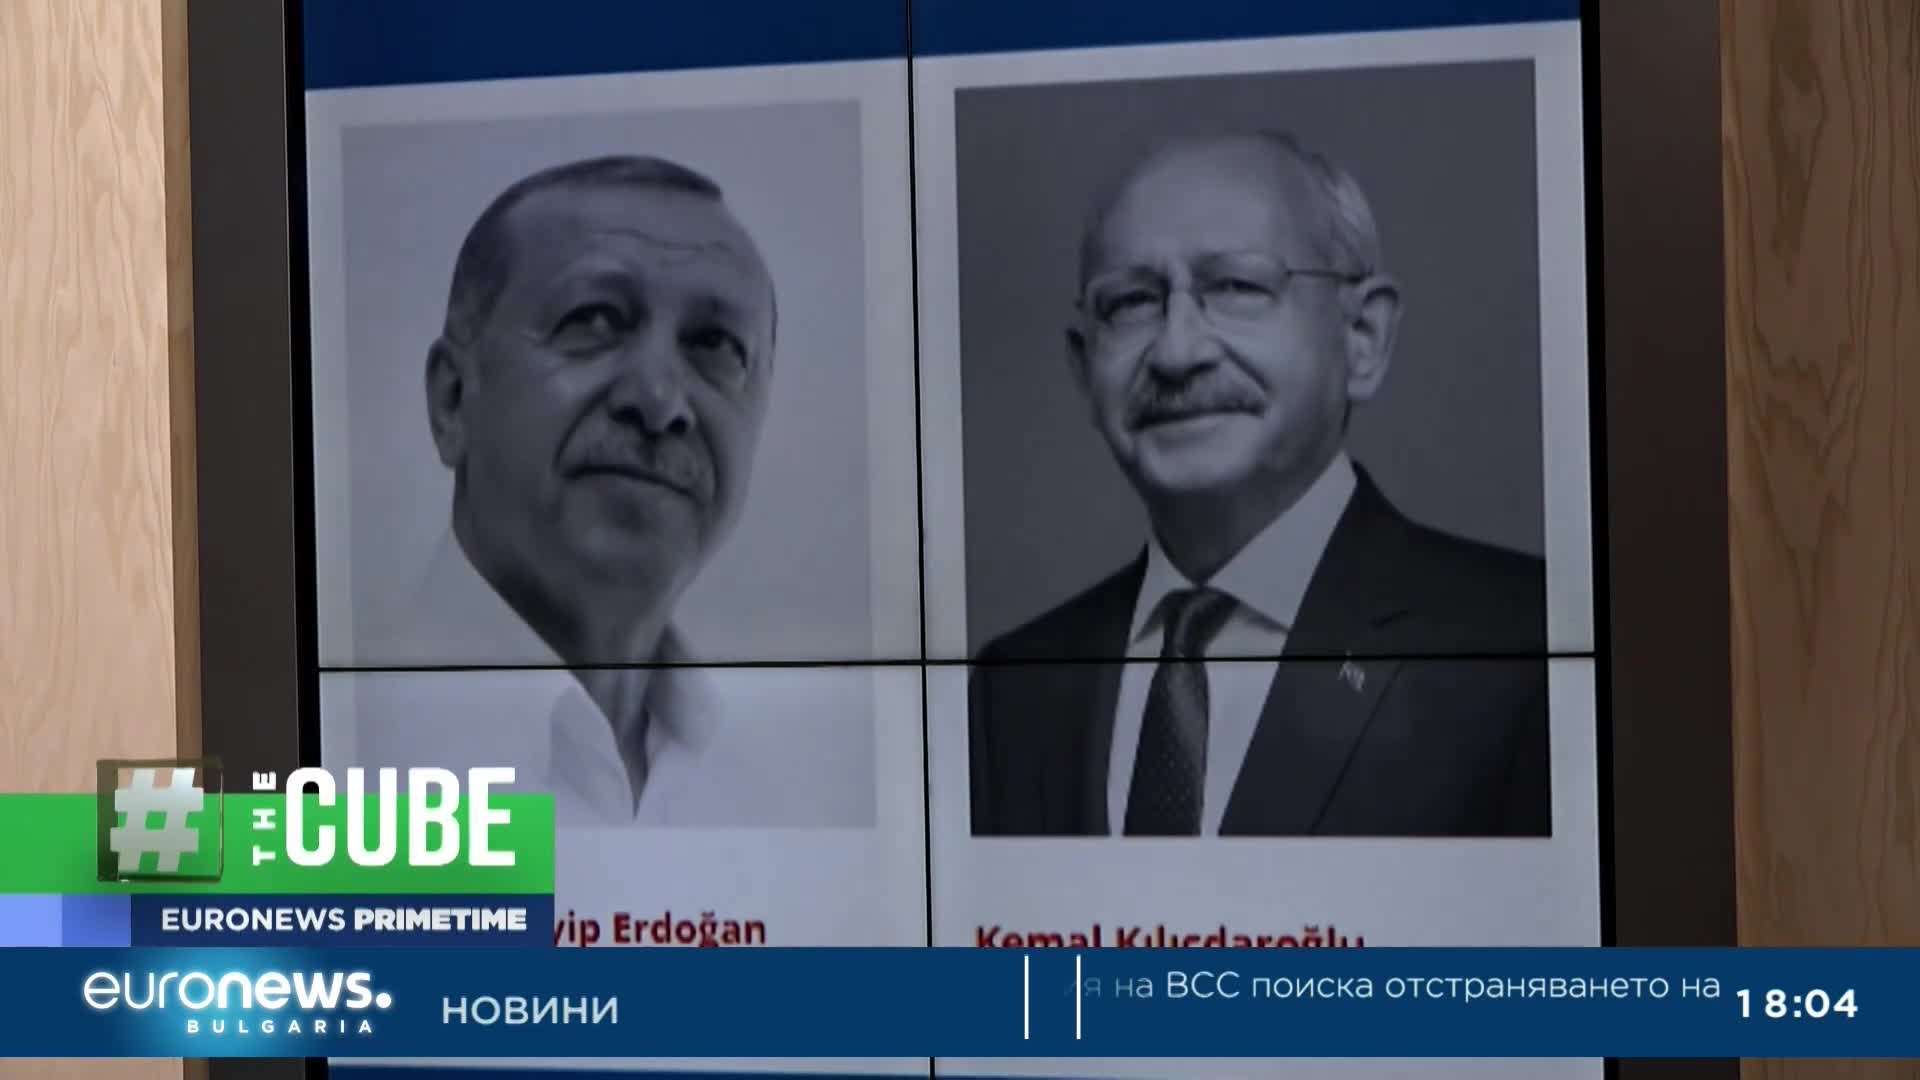 The Cube: Кой е основният опонент на Ердоган и как изгря на политическата сцена?